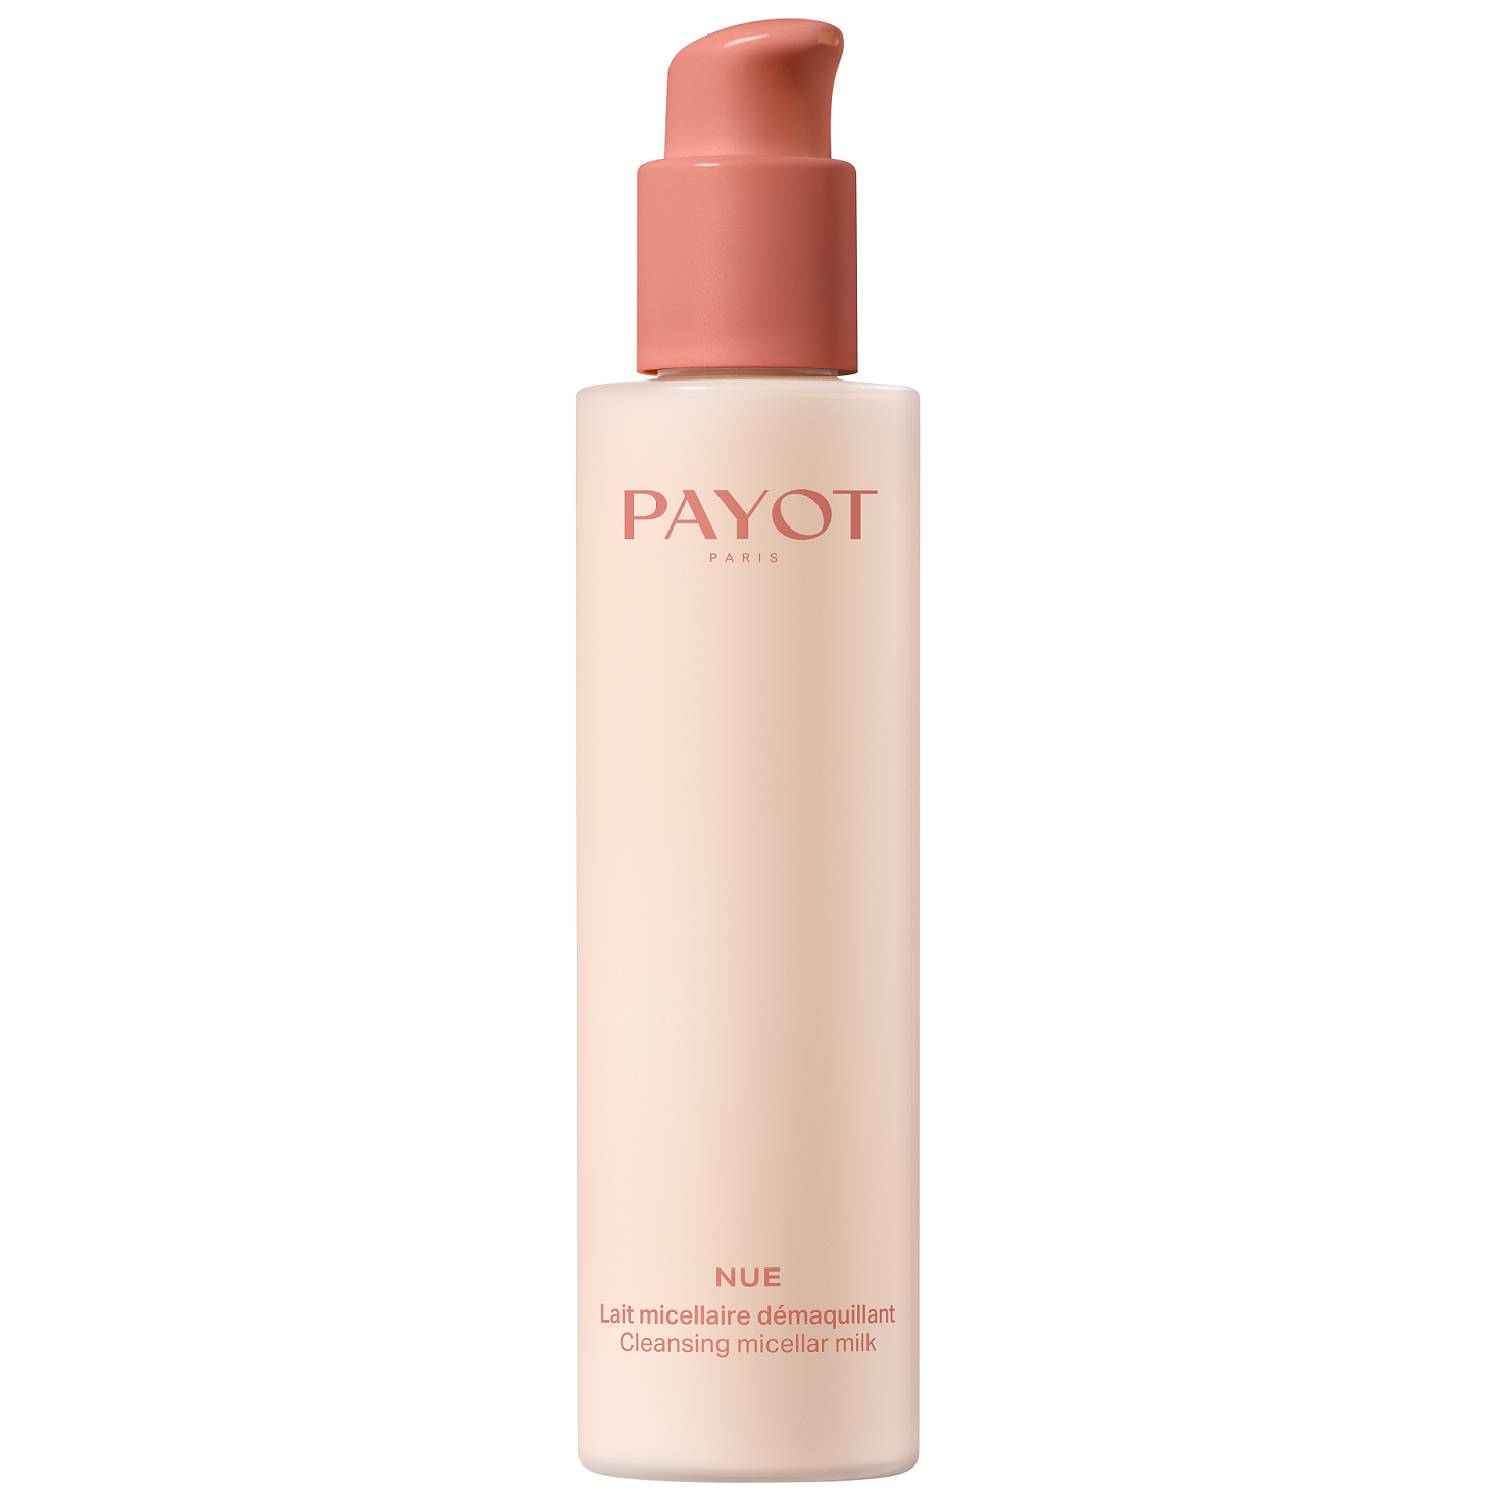 Payot Мицеллярное молочко для снятия макияжа, 200 мл (Payot, Nue)